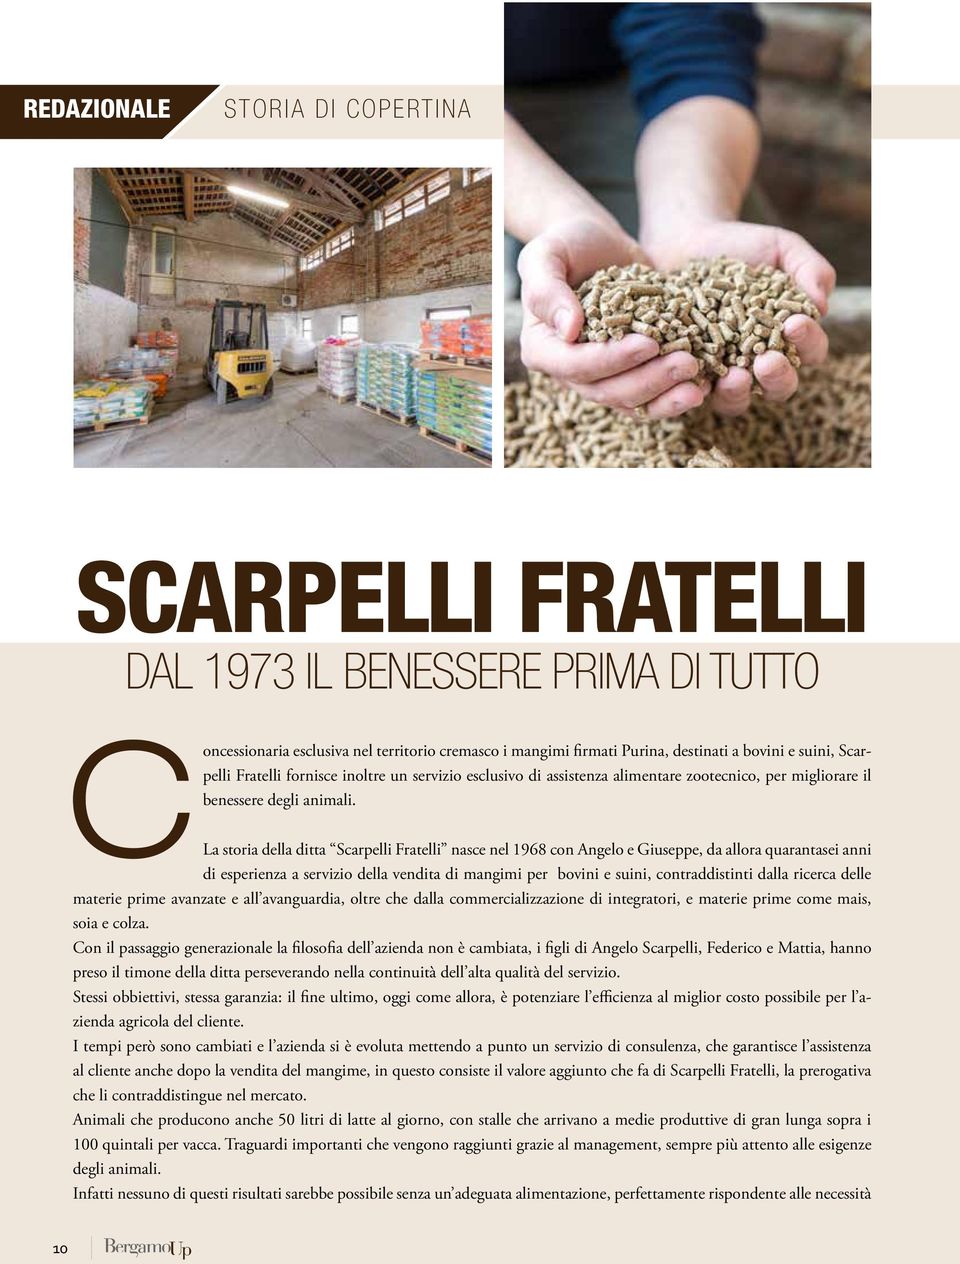 La storia della ditta Scarpelli Fratelli nasce nel 1968 con Angelo e Giuseppe, da allora quarantasei anni di esperienza a servizio della vendita di mangimi per bovini e suini, contraddistinti dalla